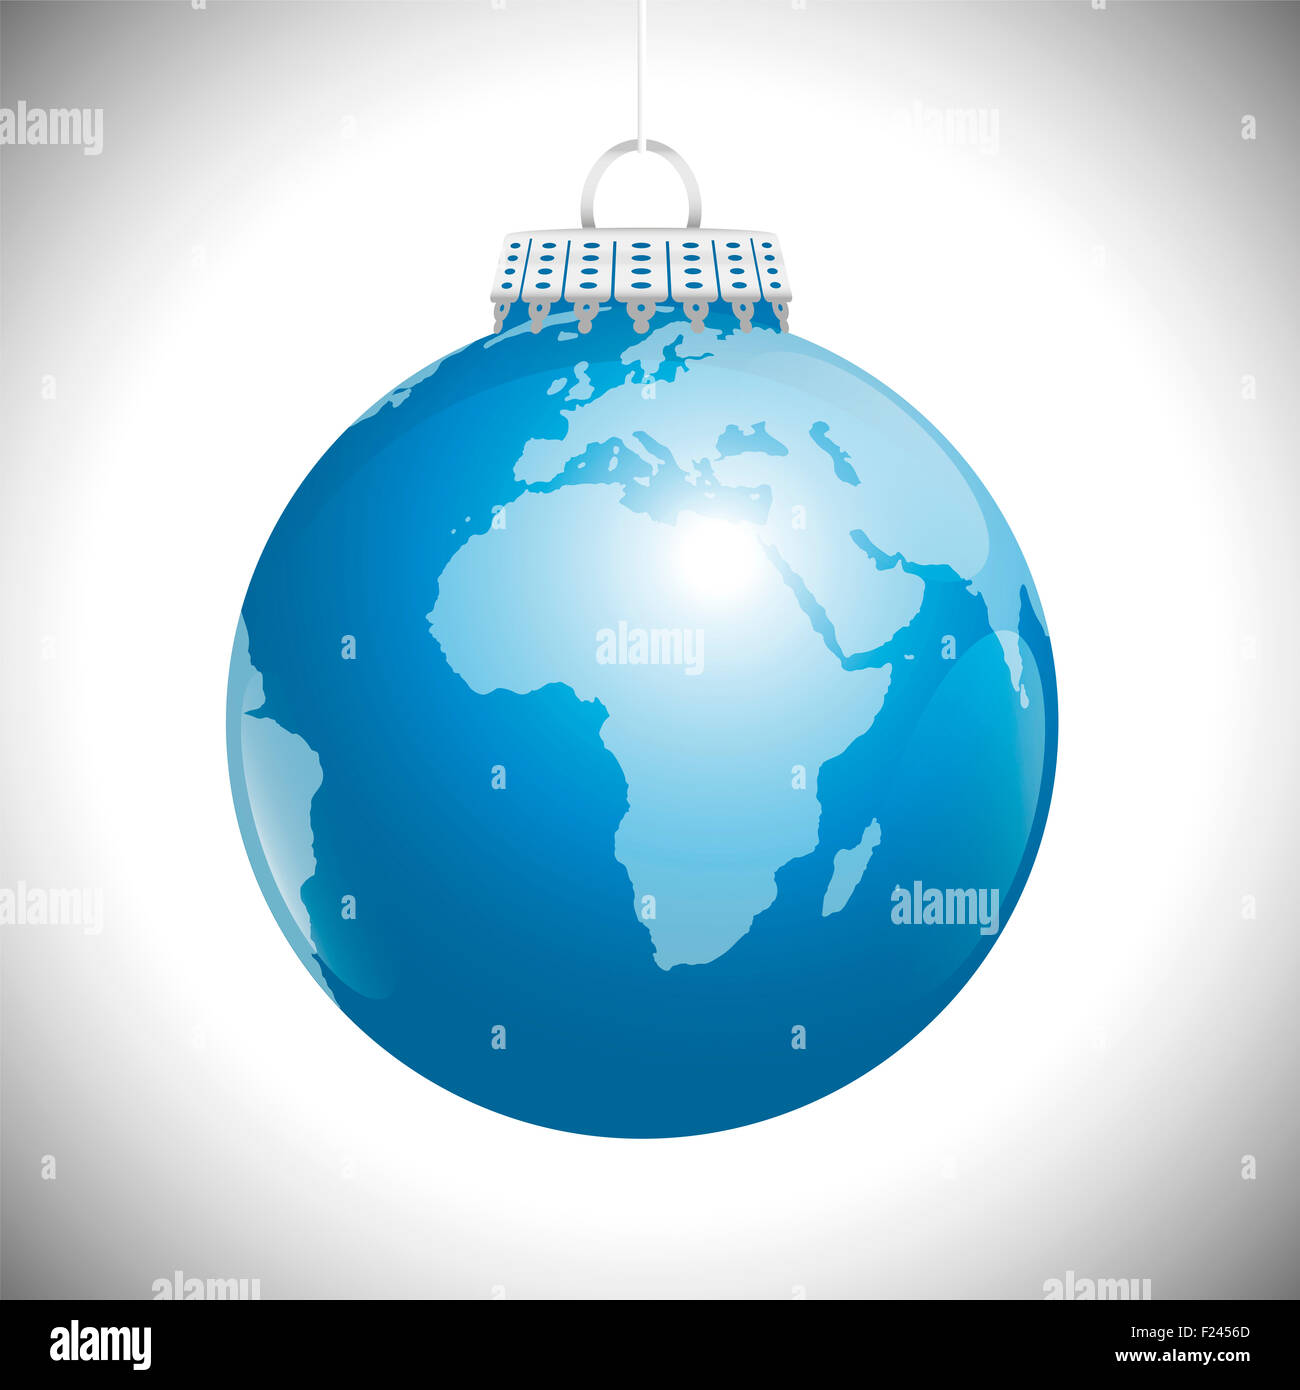 Planetenerde mit Afrika und Europa, dargestellt als eine blaue Weihnachtsbaum-Kugel als Symbol für globalen Frieden und Solidarität. Stockfoto